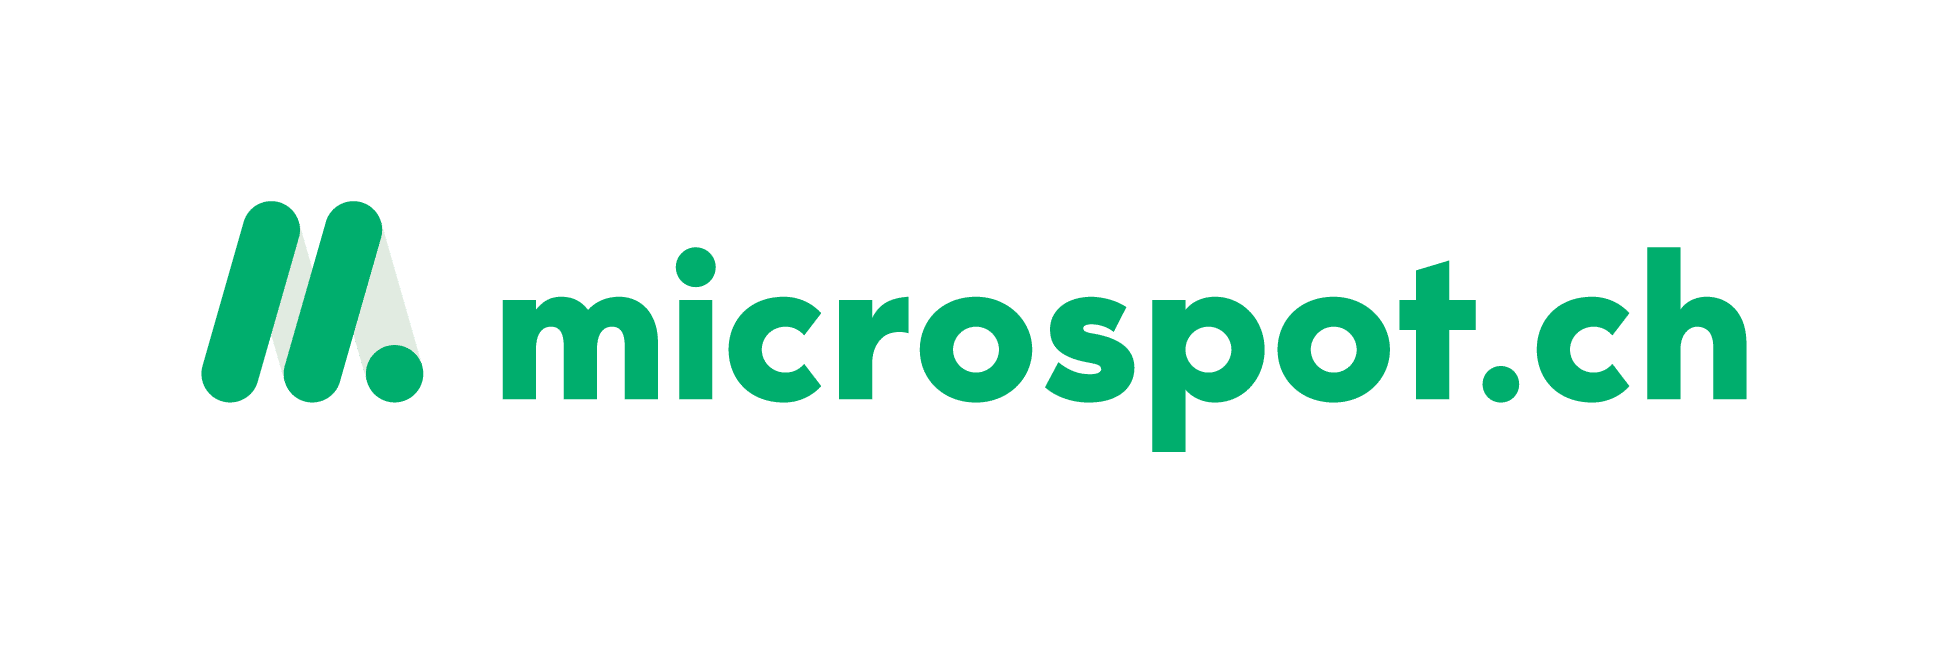 microspot-logo